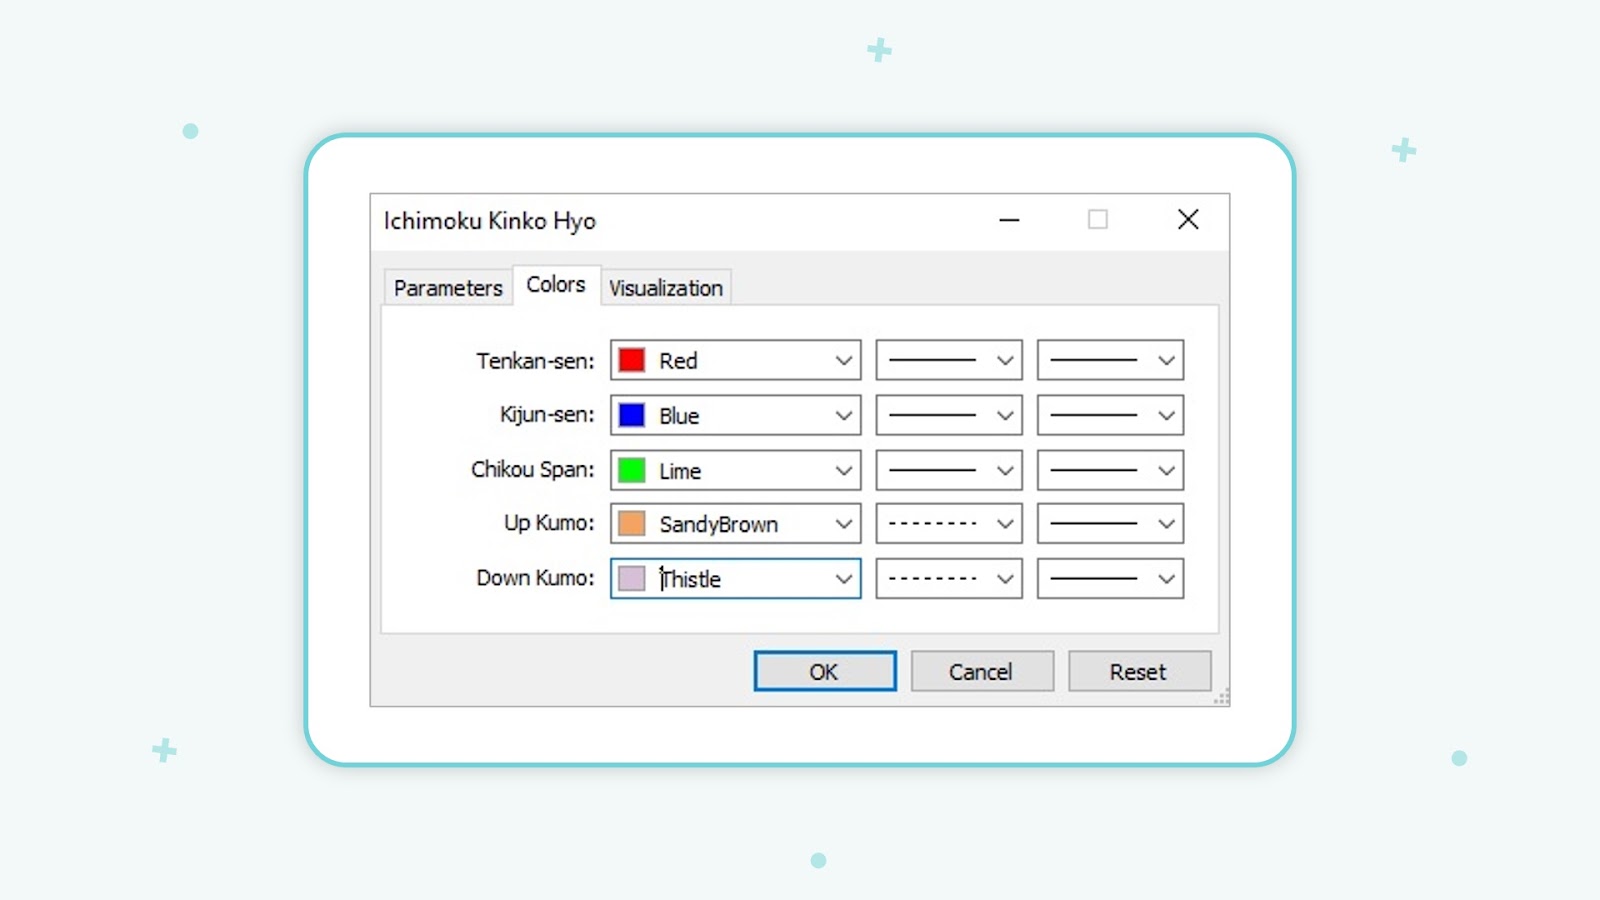 سربرگ‌های پنجره تنظیمات اندیکاتورها- سربرگ Colors